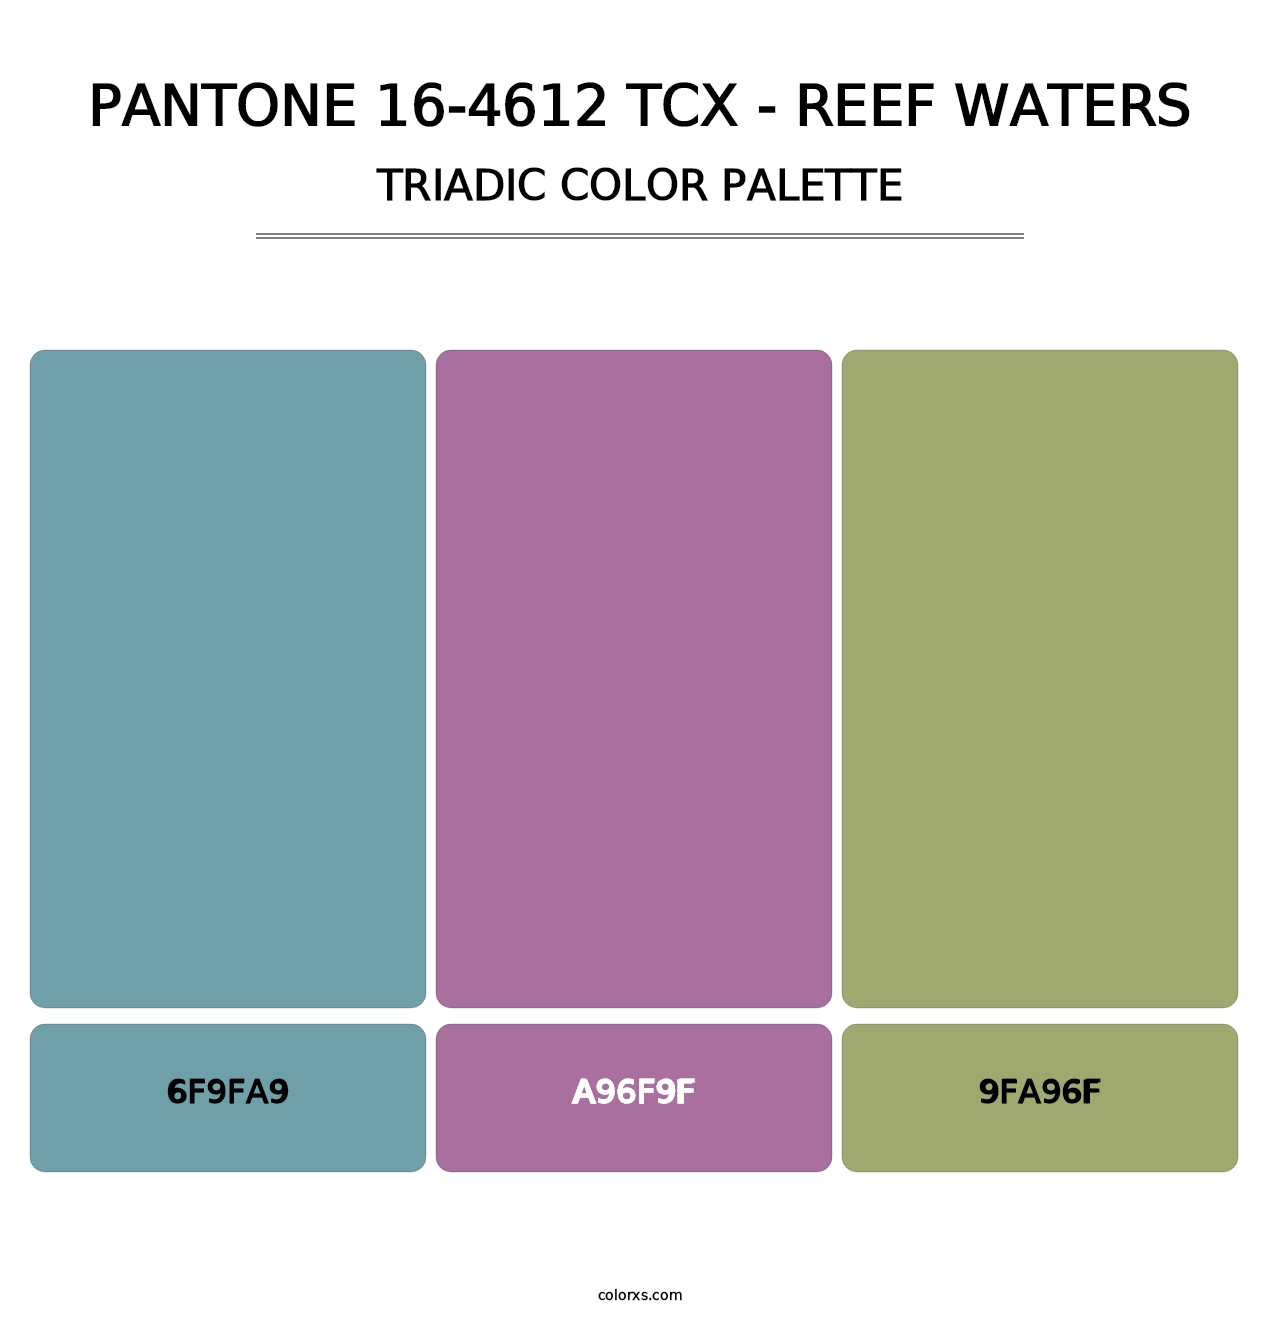 PANTONE 16-4612 TCX - Reef Waters - Triadic Color Palette